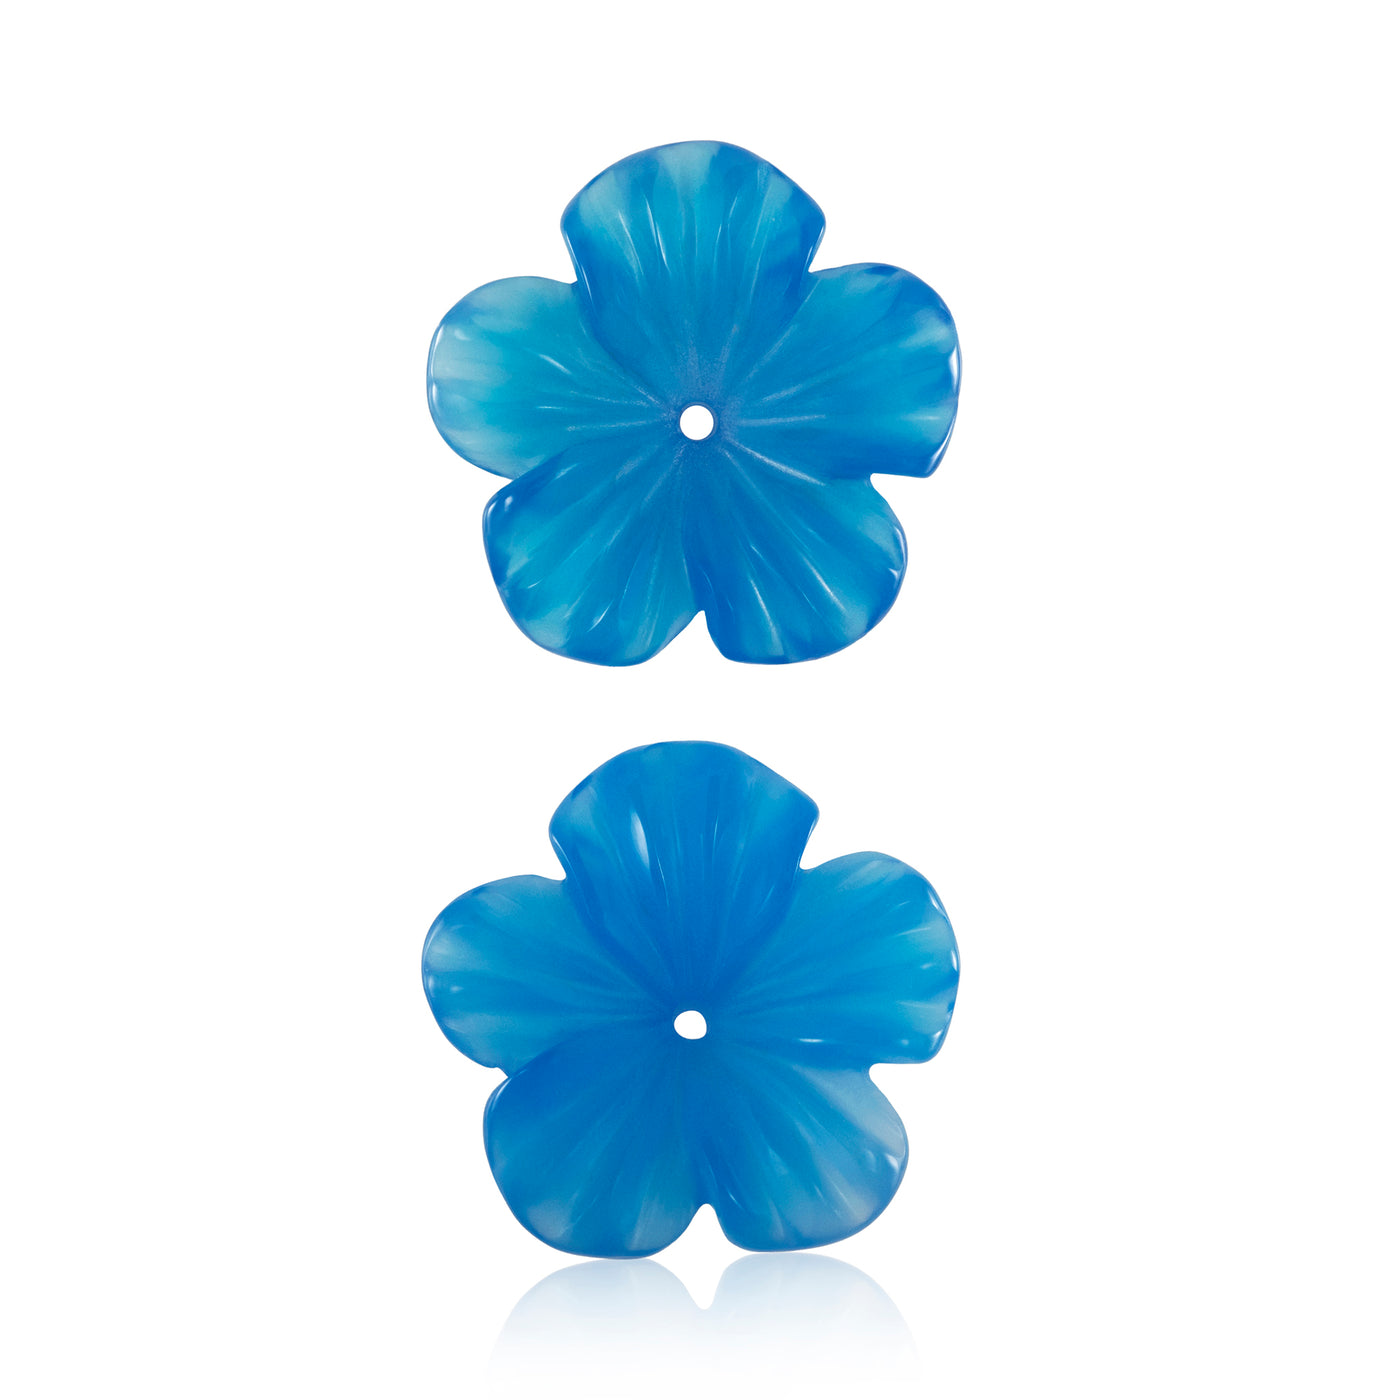 Kostbare Blumen * Blauer Achat 5 Blätter 16 mm